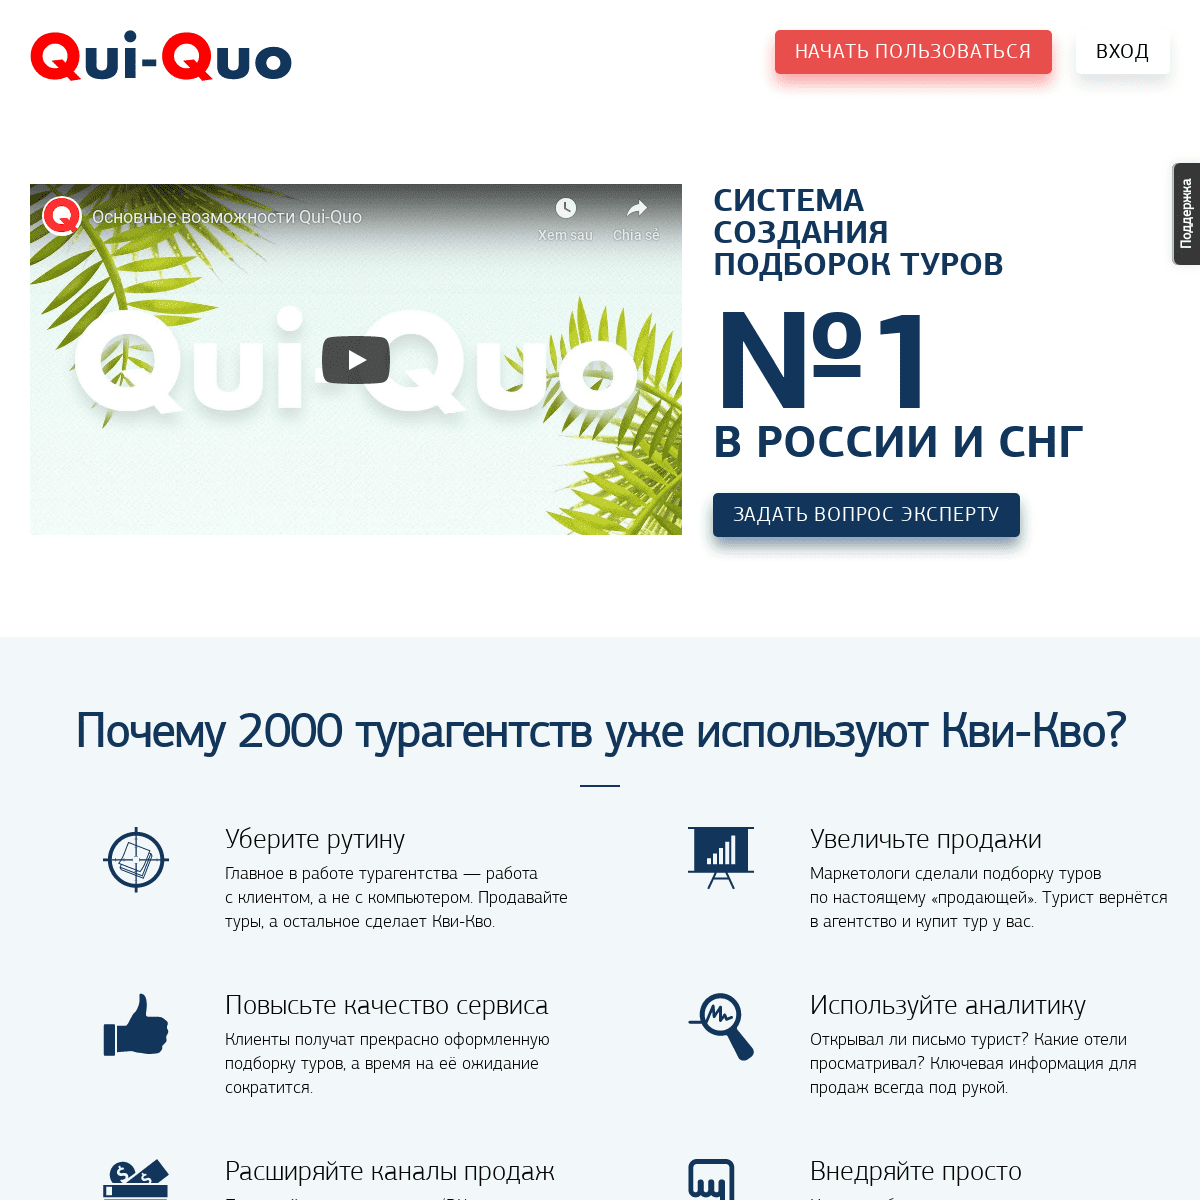 Qui-Quo — система создания подборок туров №1 в России и СНГ